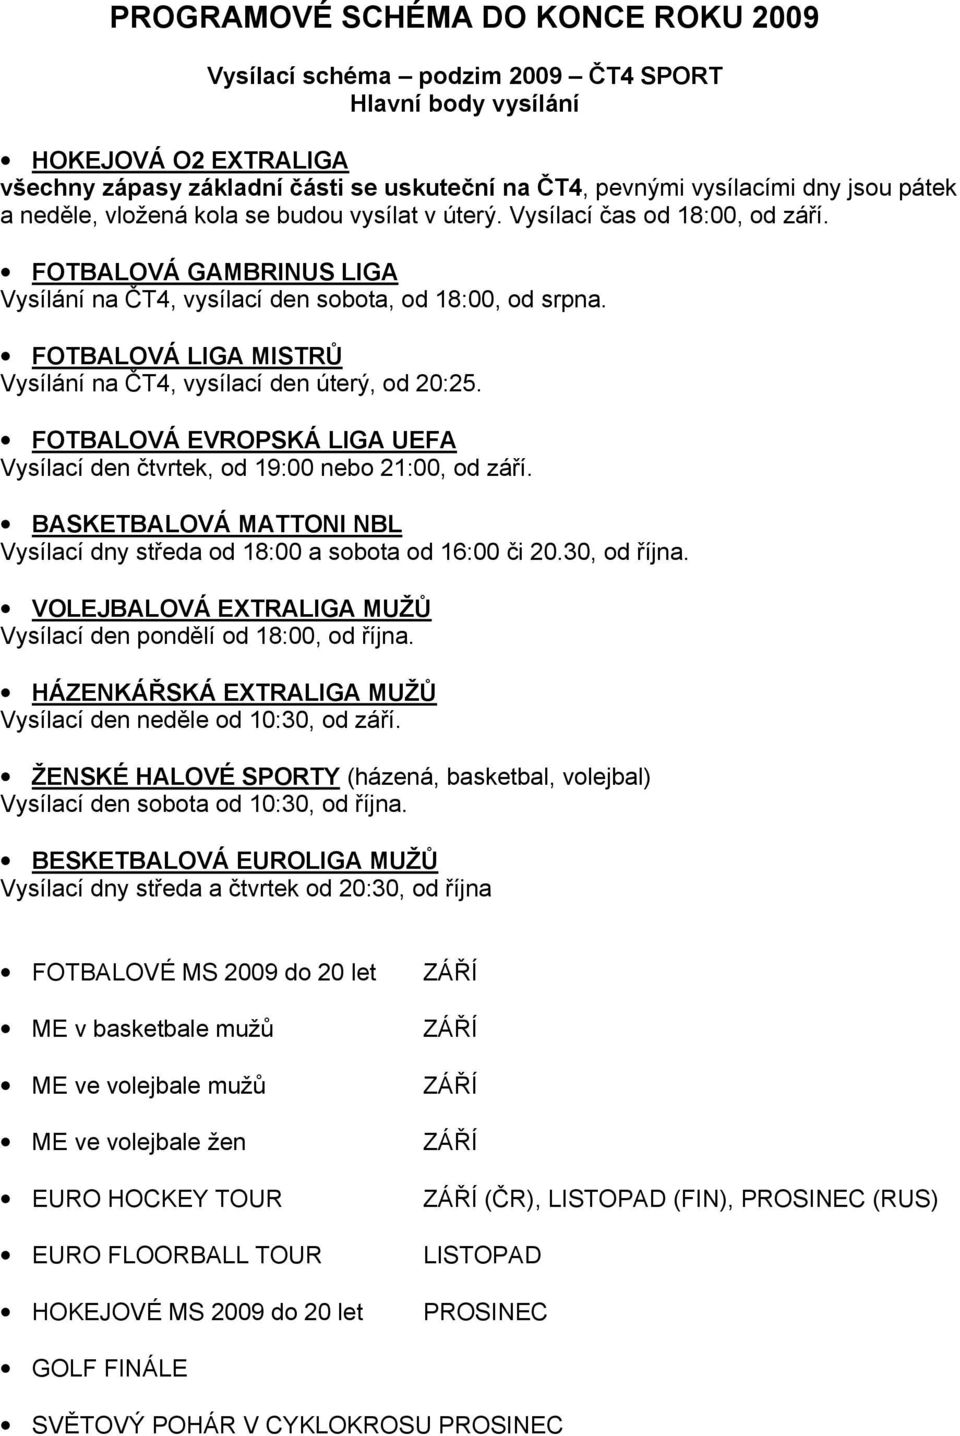 FOTBALOVÁ LIGA MISTRŮ Vysílání na ČT4, vysílací den úterý, od 20:25. FOTBALOVÁ EVROPSKÁ LIGA UEFA Vysílací den čtvrtek, od 19:00 nebo 21:00, od září.